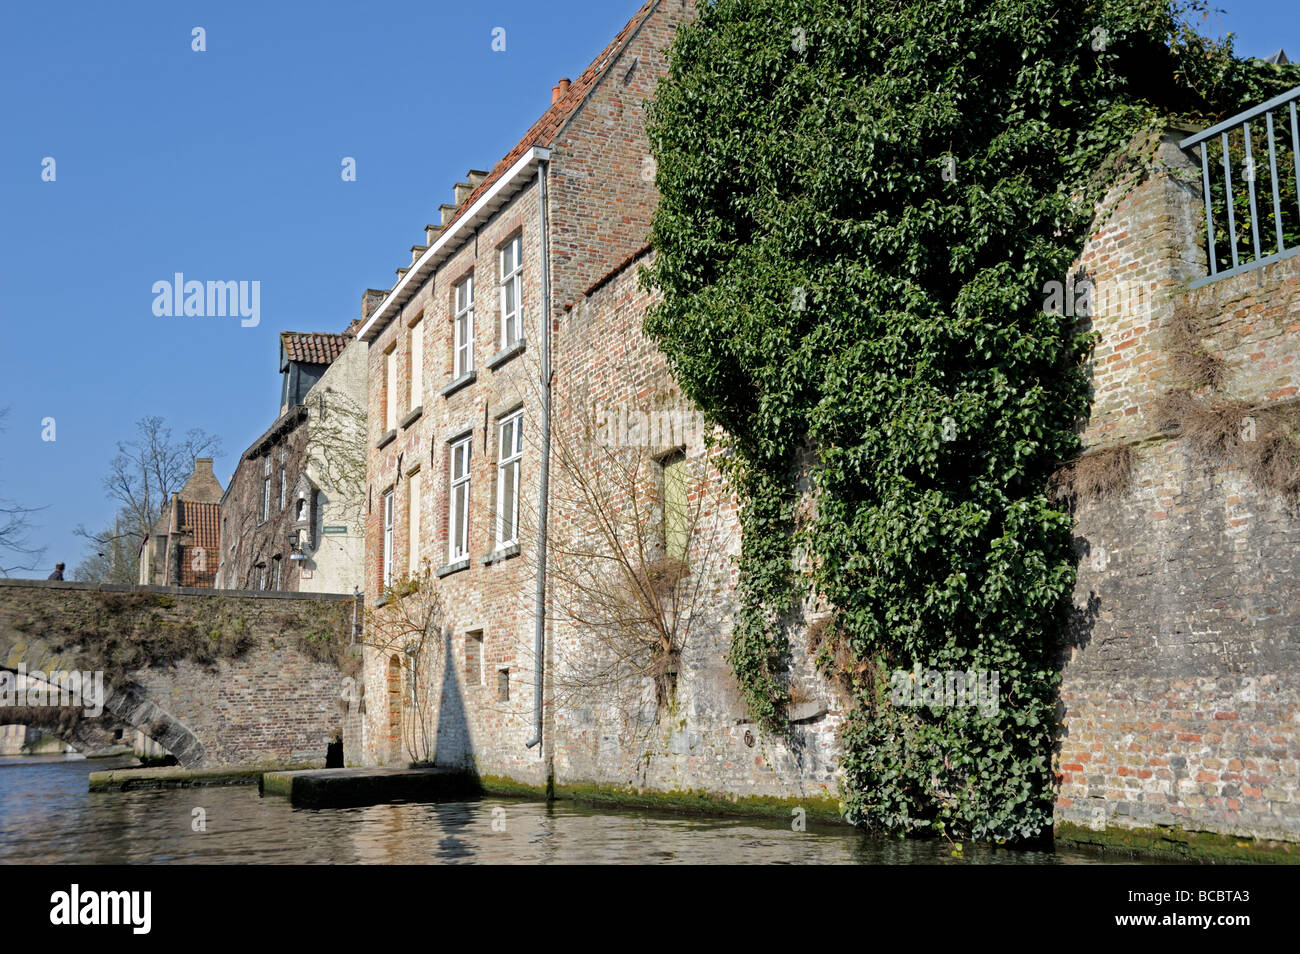 Vue sur la ville médiévale de Bruges, Belgique. Banque D'Images